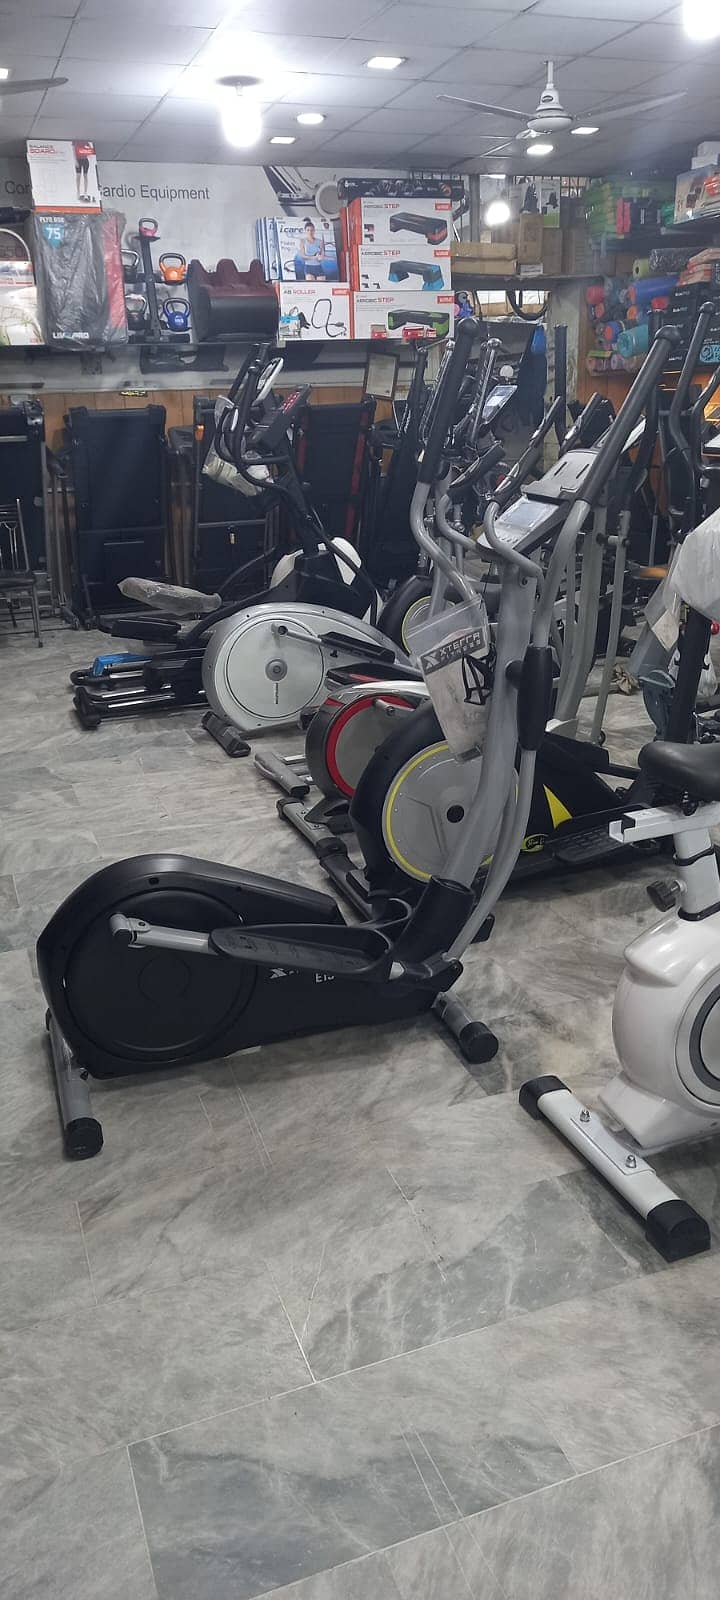 Exercise bike Elliptical Cros Trainer full body workout dumbbell plate 15